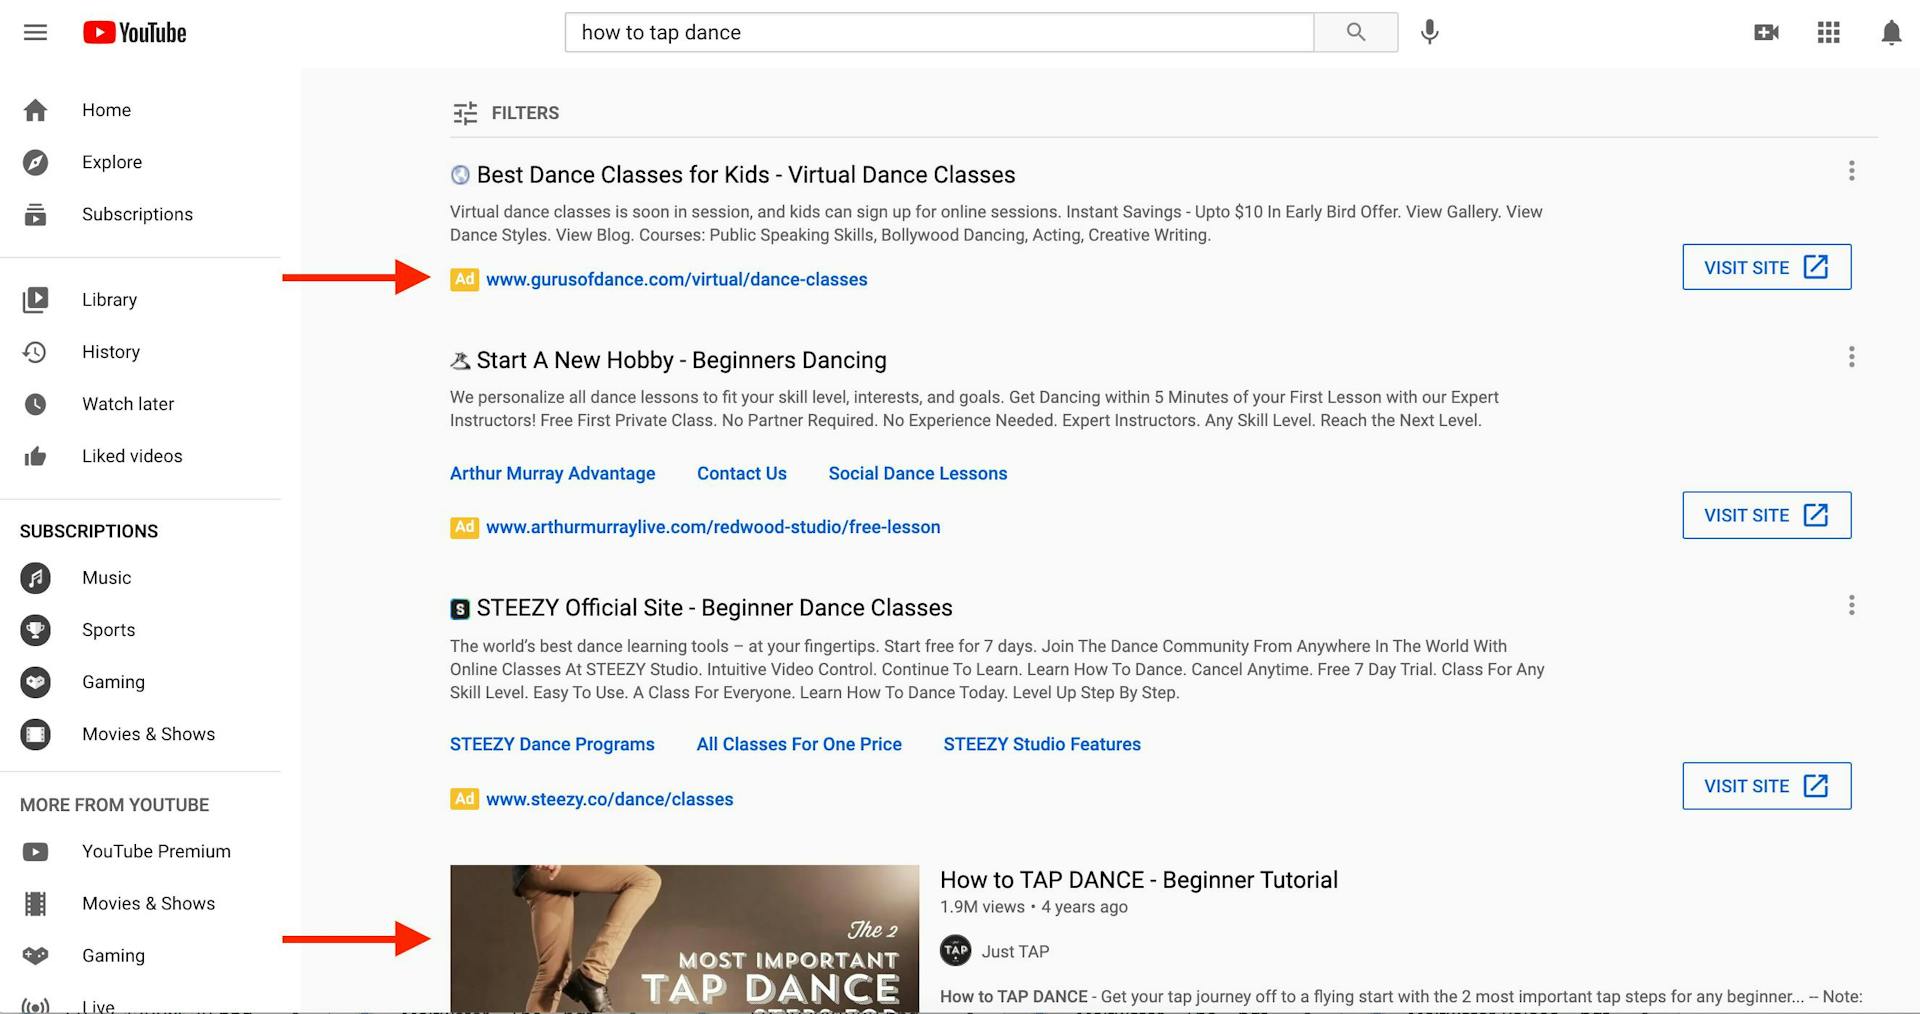 Résultats d'une recherche YouTube avec 3 publicités au-dessus du contenu 